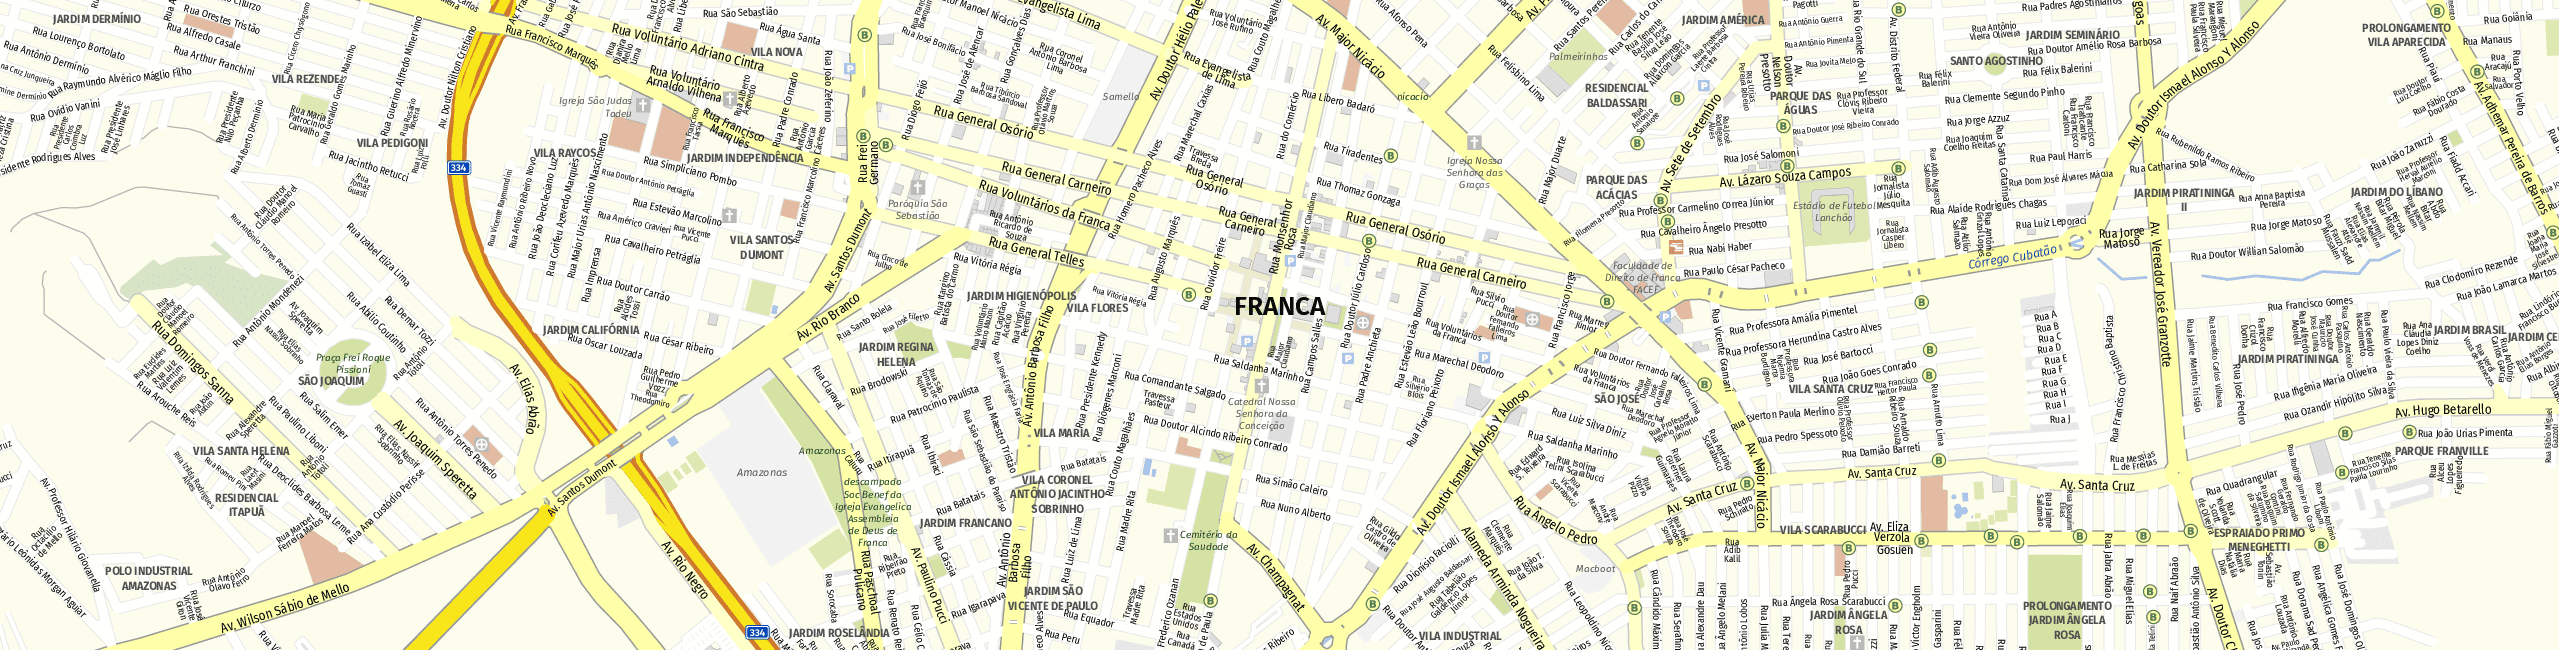 Stadtplan Franca zum Downloaden.